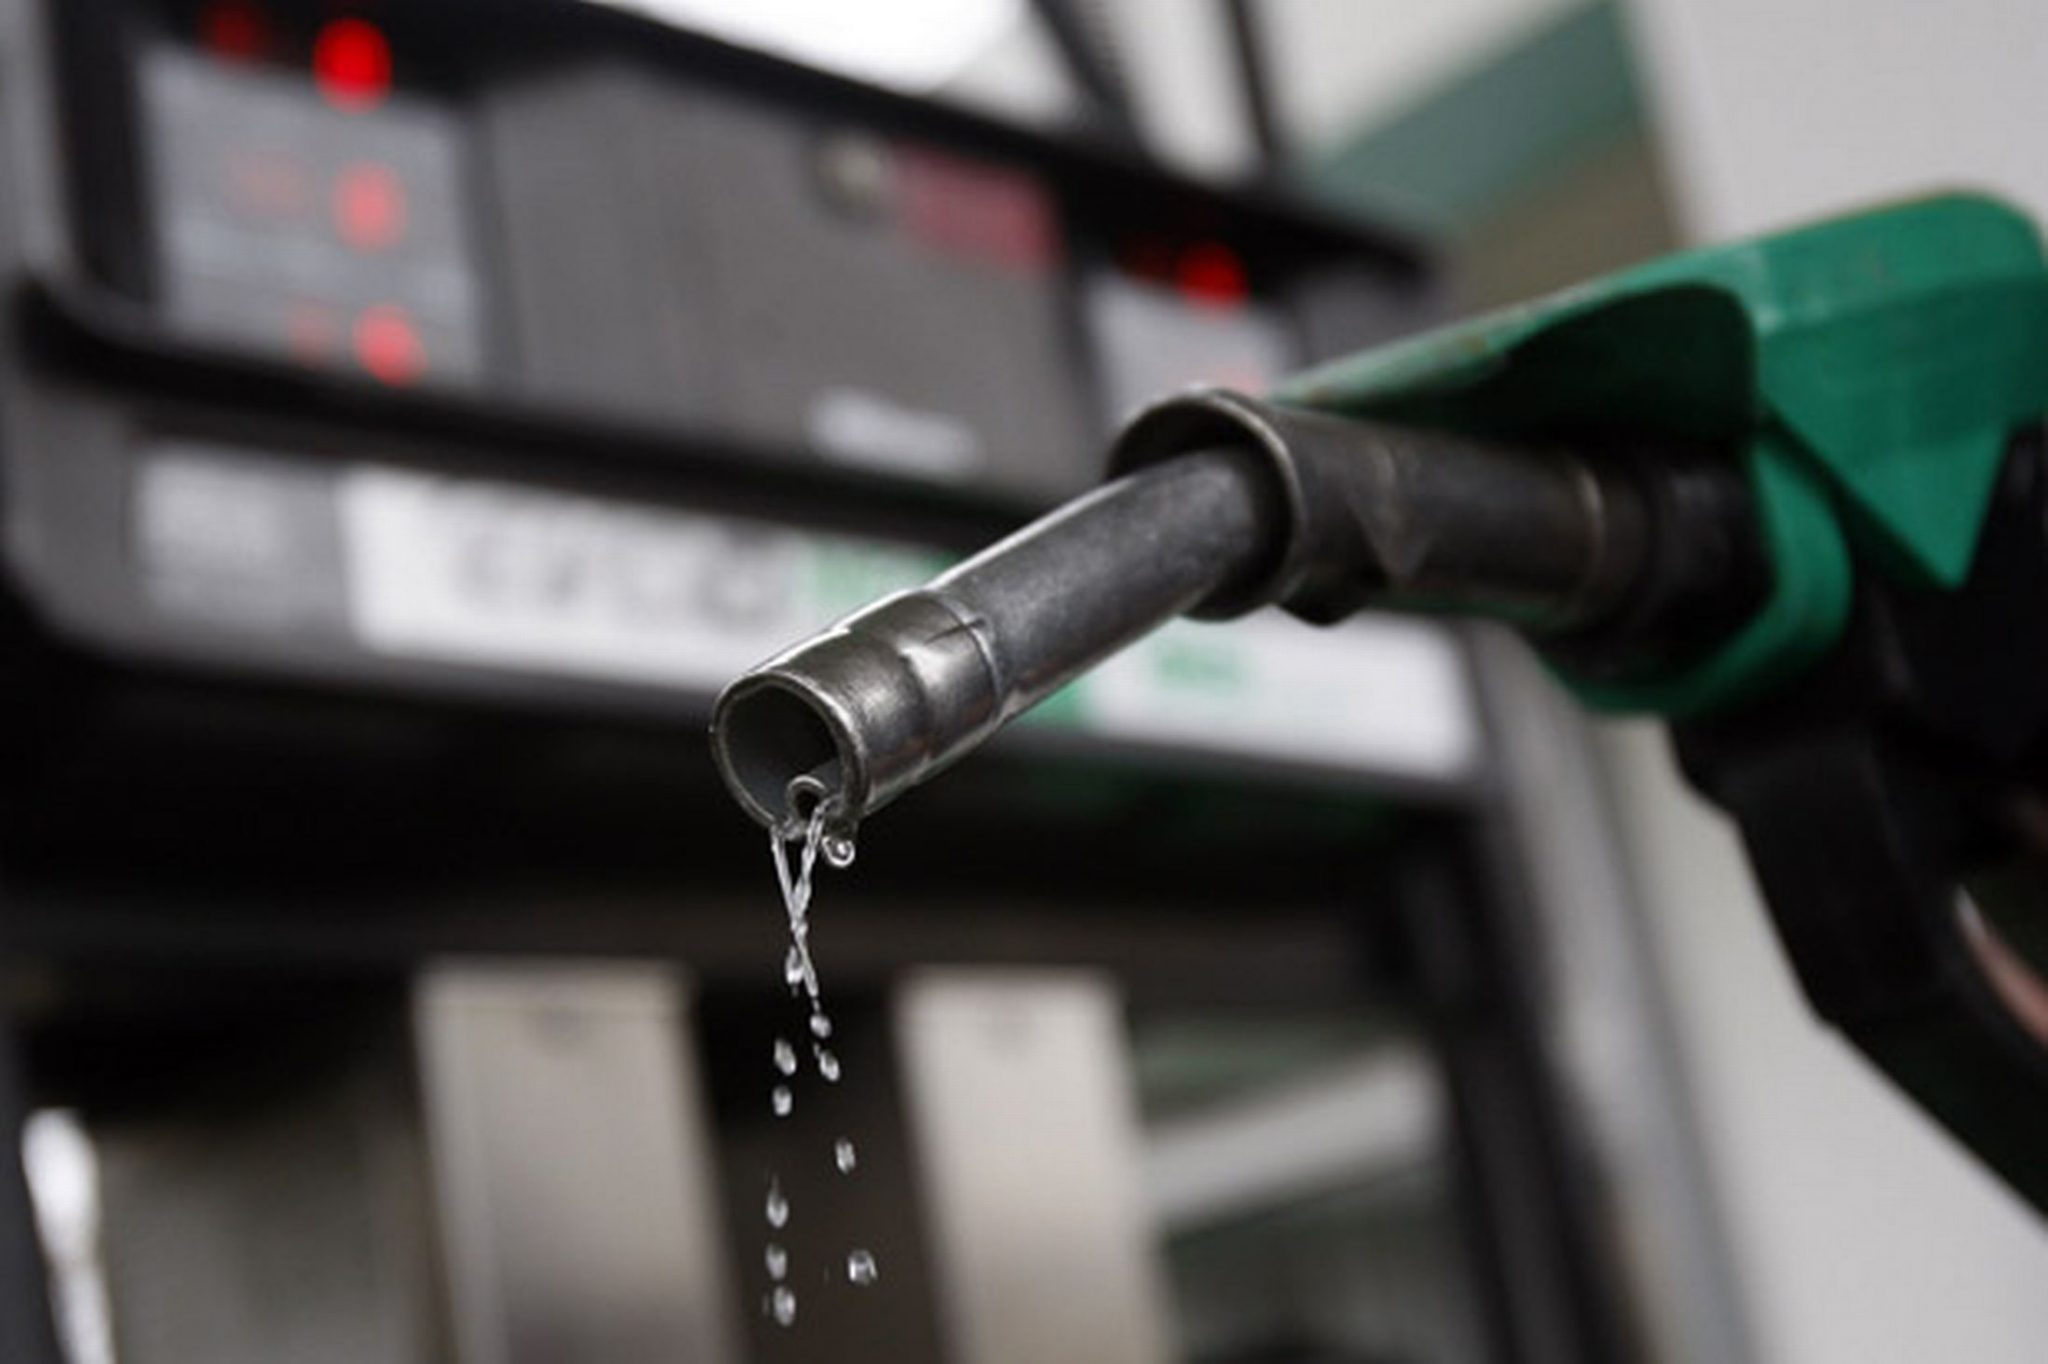 Petrol up, diesel down, as oil retreats